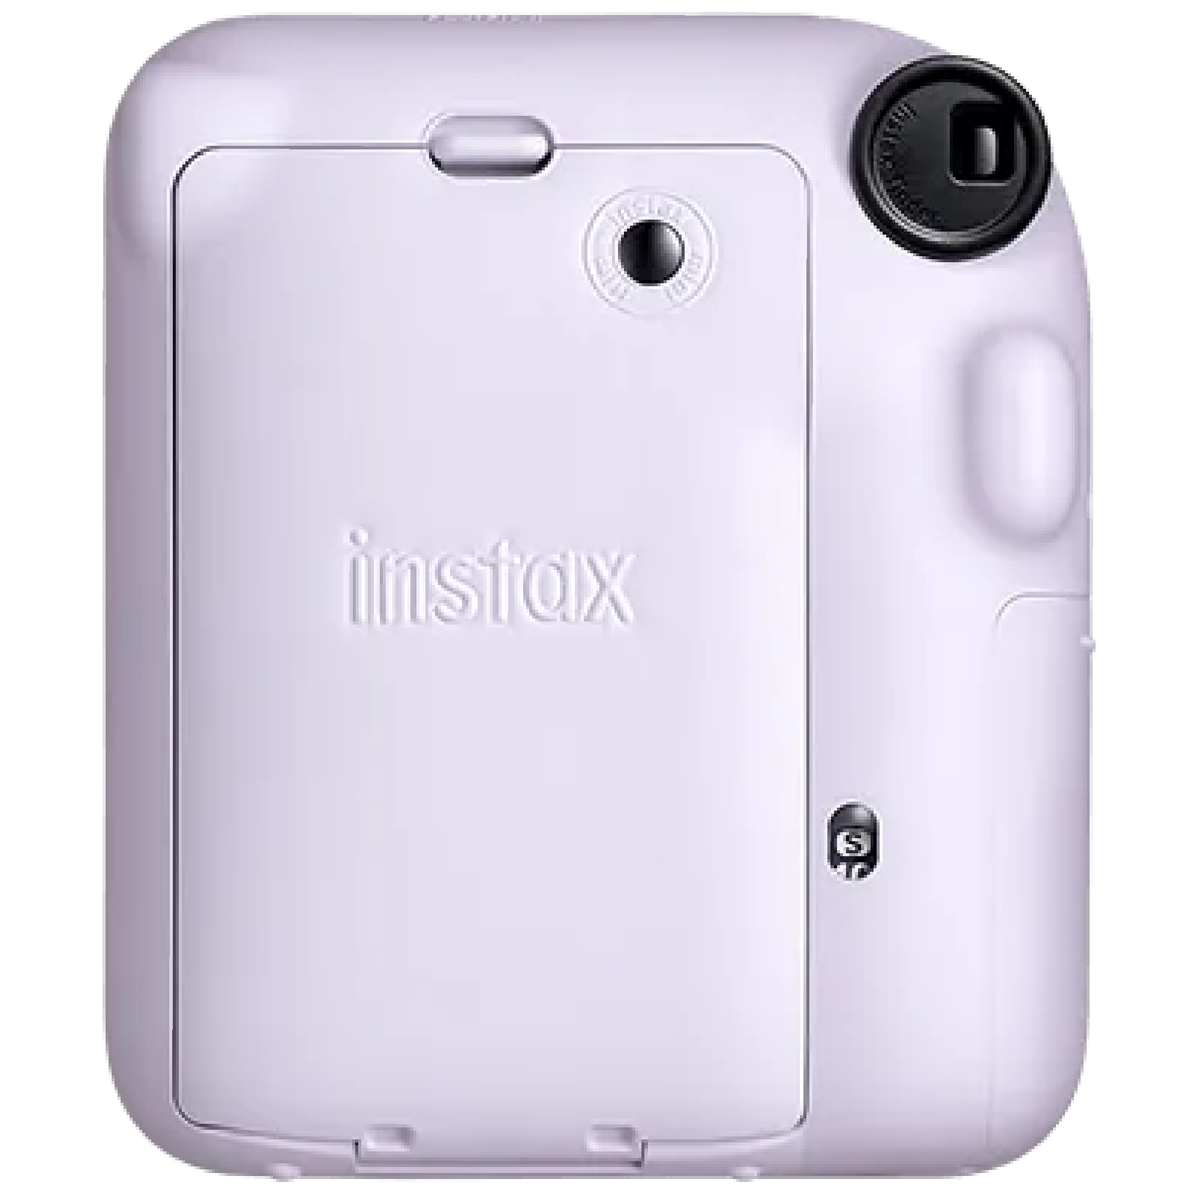 Fujifilm Instax Mini 12 Instant Film Camera, Lilac Purple